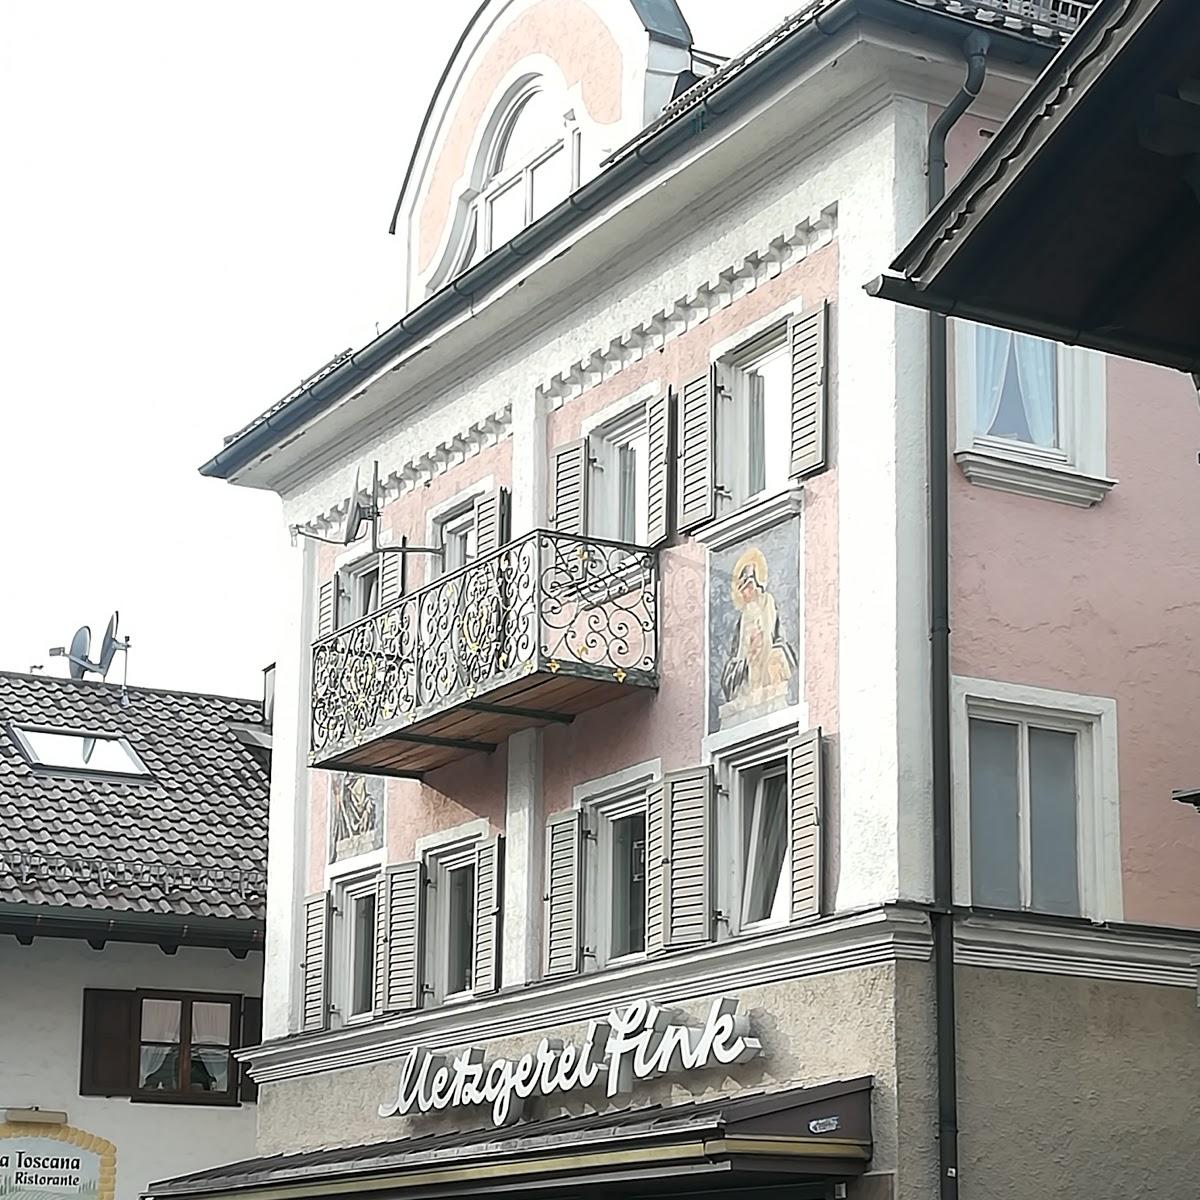 Restaurant "Rambutan Thailändische Spezialitäten" in  Garmisch-Partenkirchen